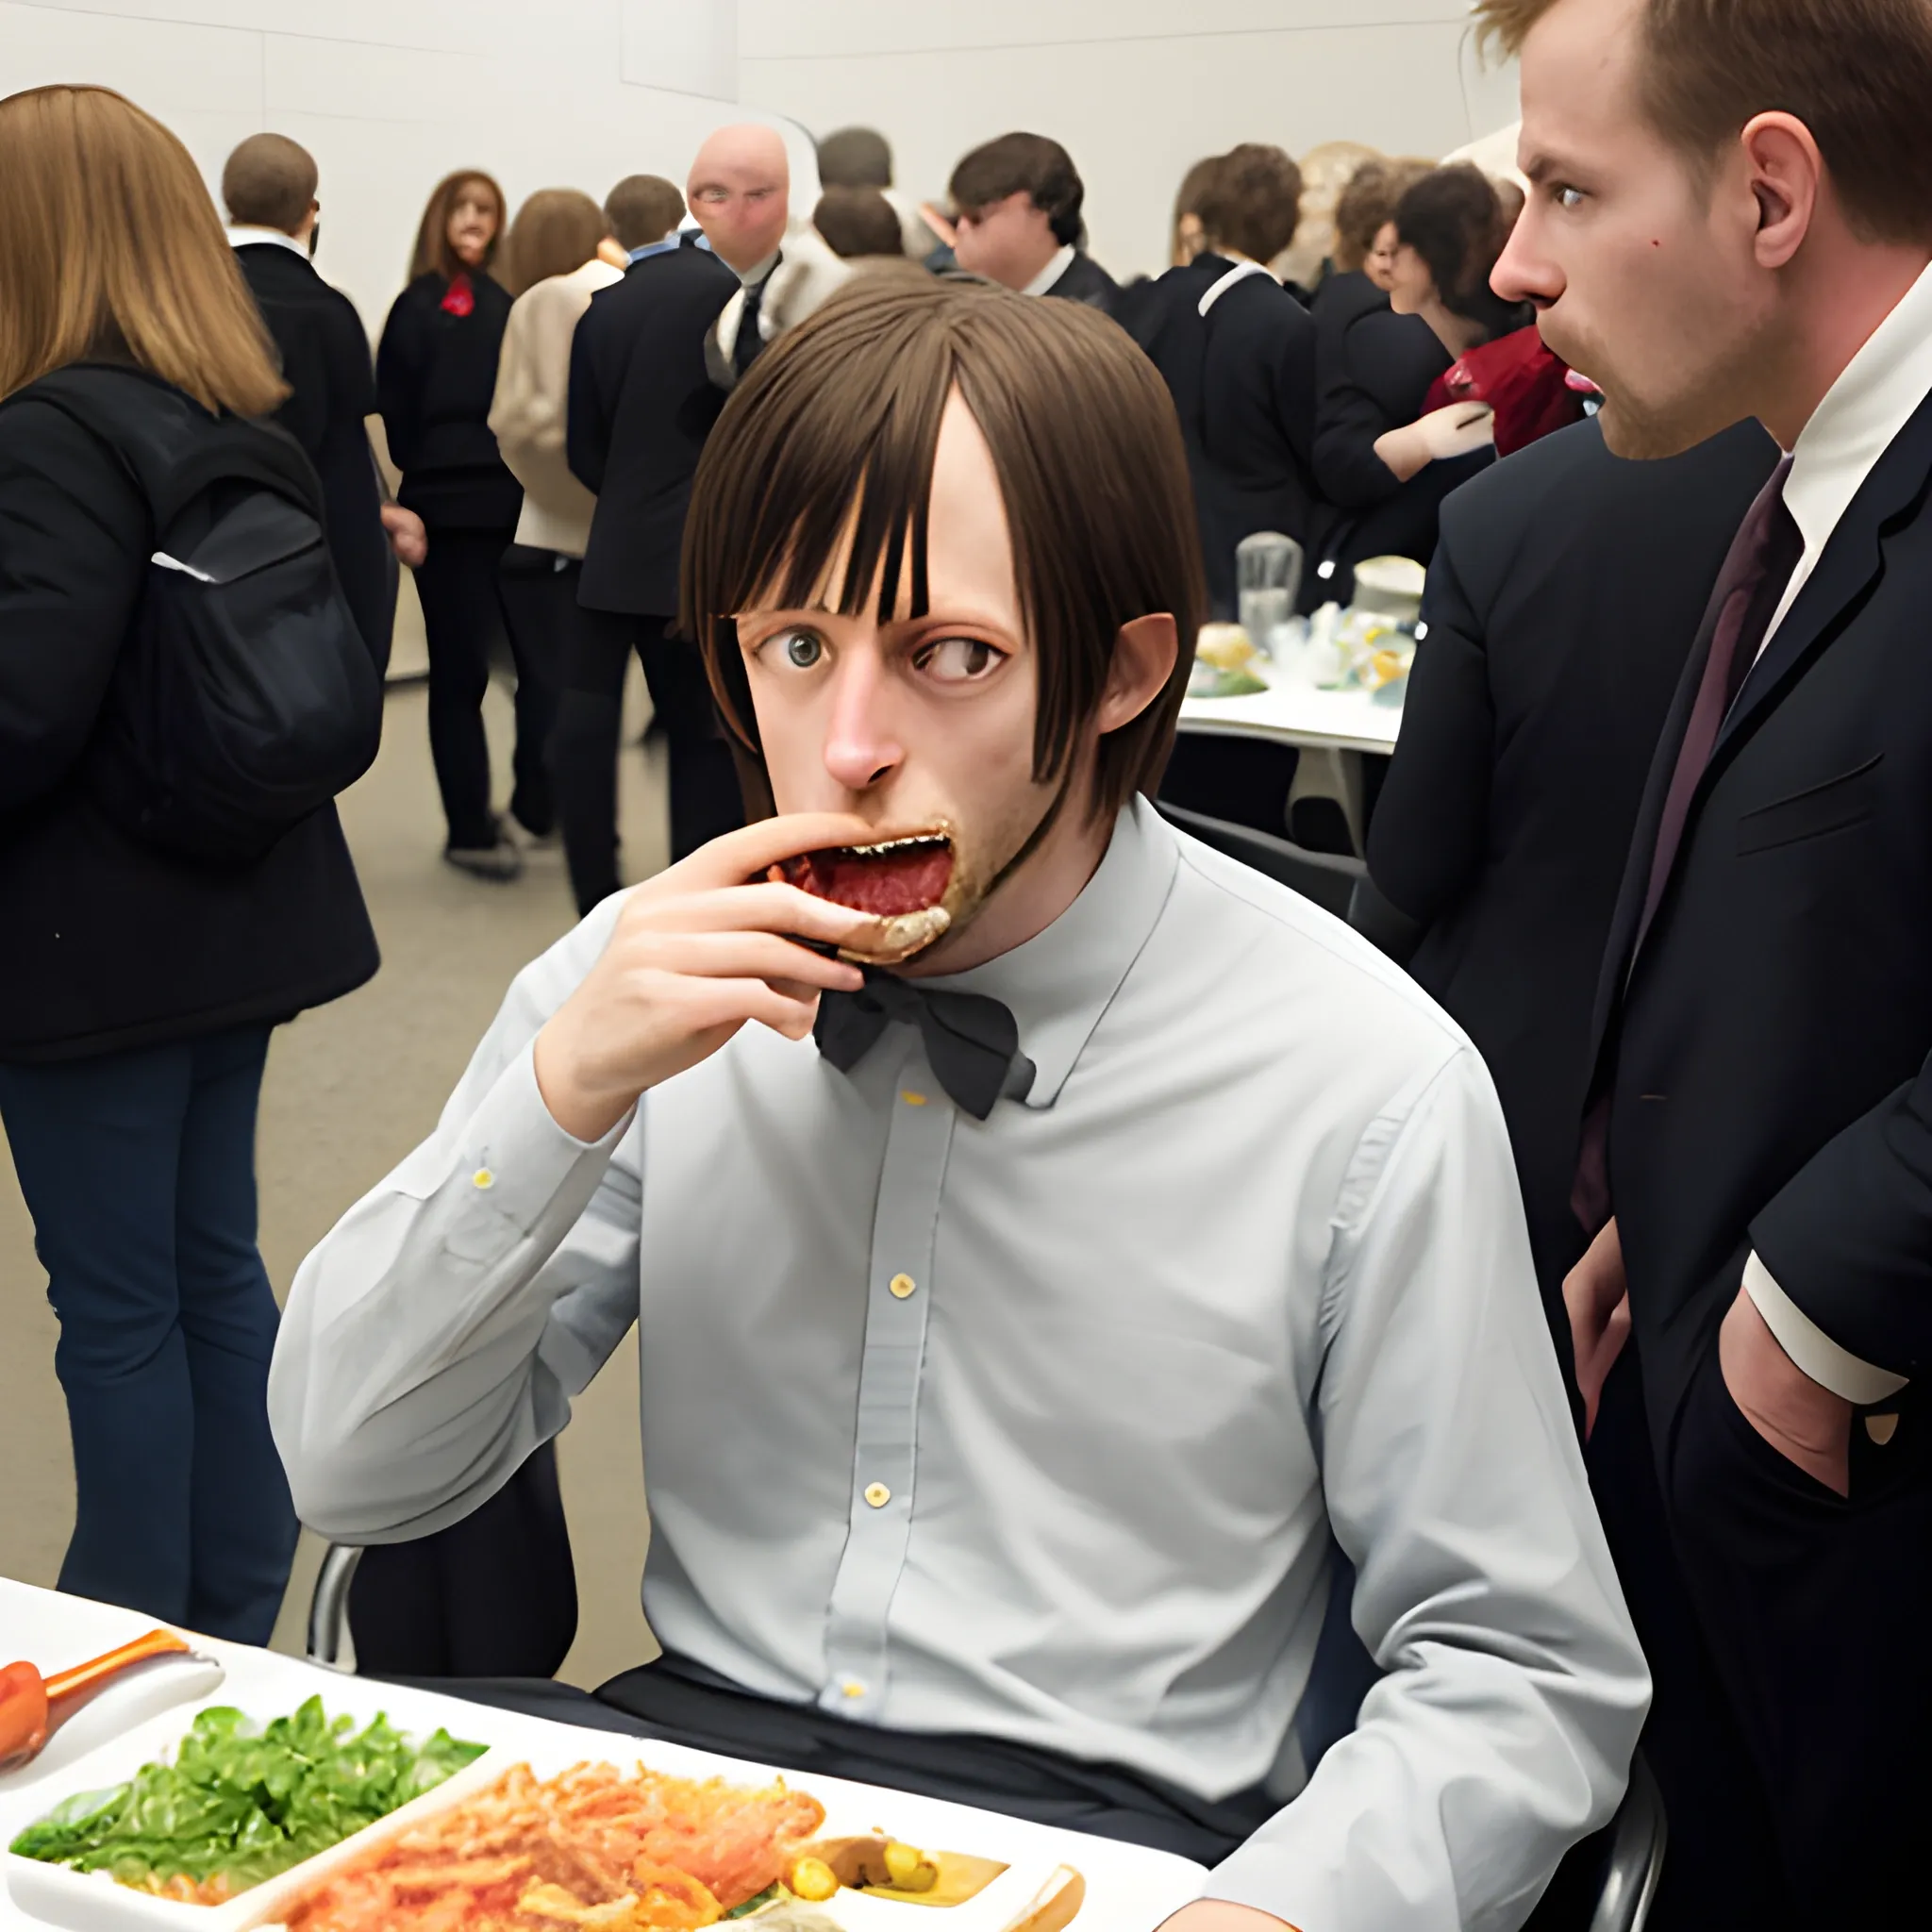 Allen eating people